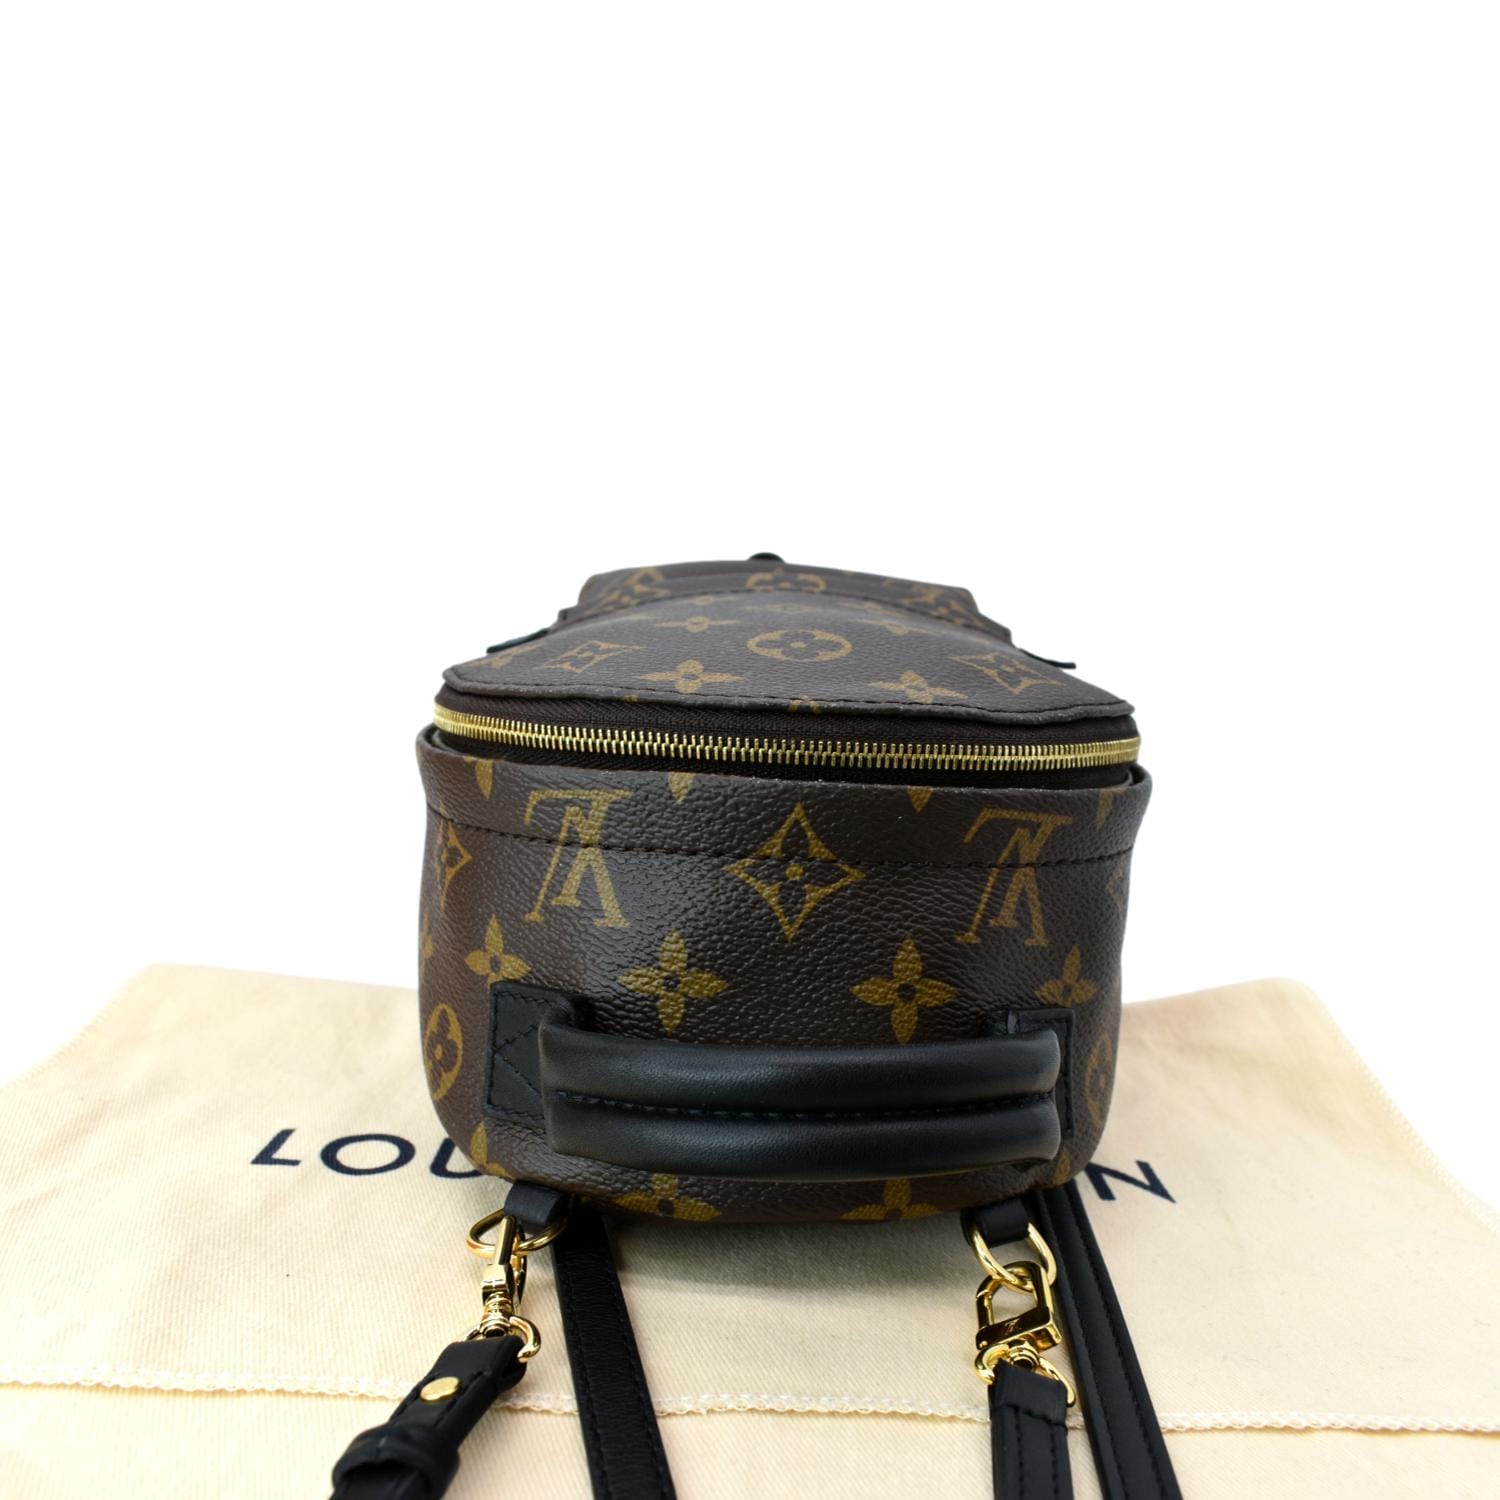 Louis Vuitton Palm Springs Party Bracelet Mini Backpack Monogram